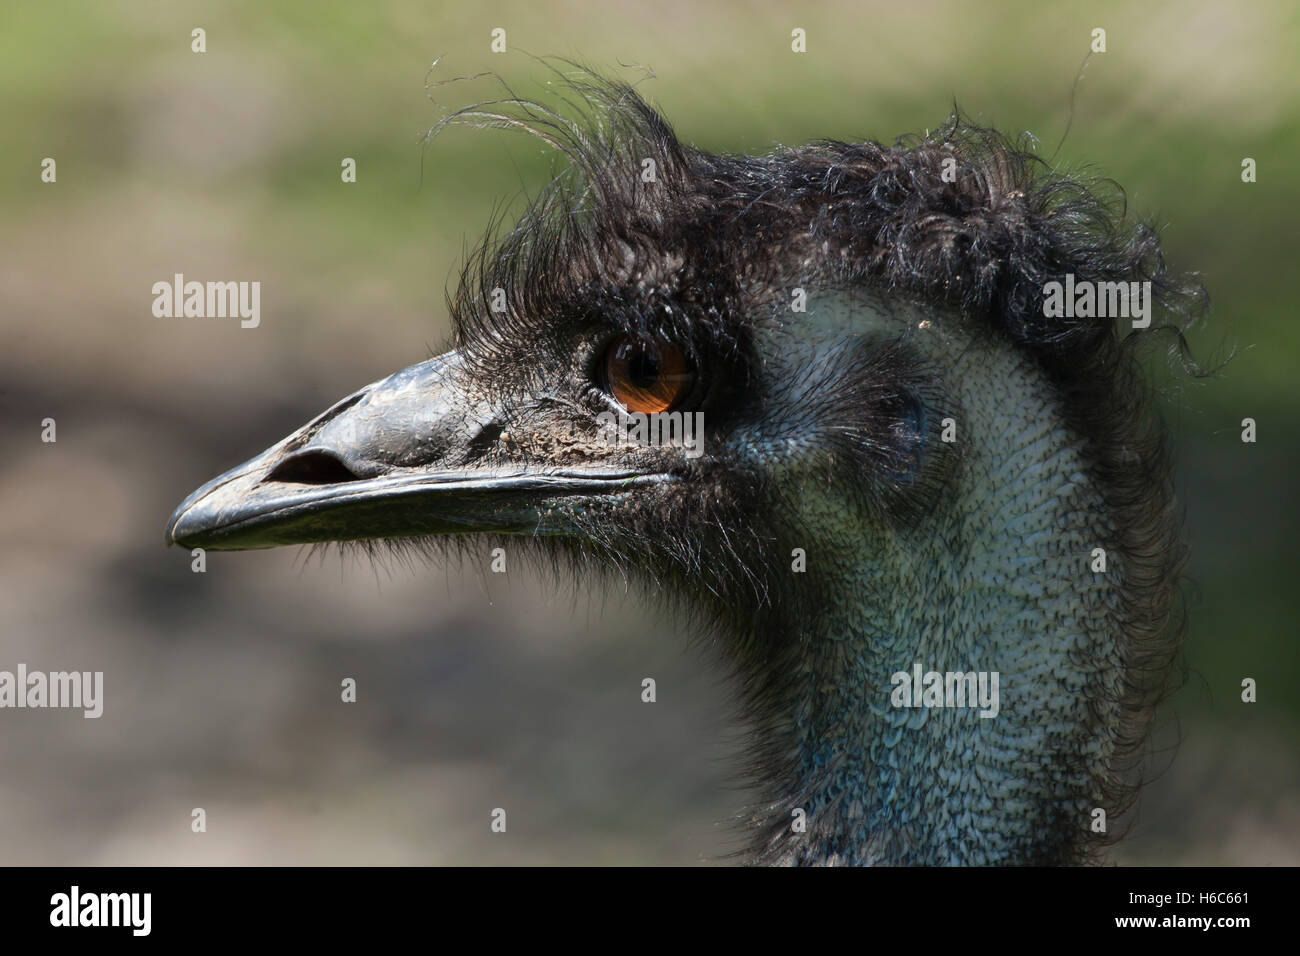 Emu (Dromaius novaehollandiae). Wildlife animal. Stock Photo